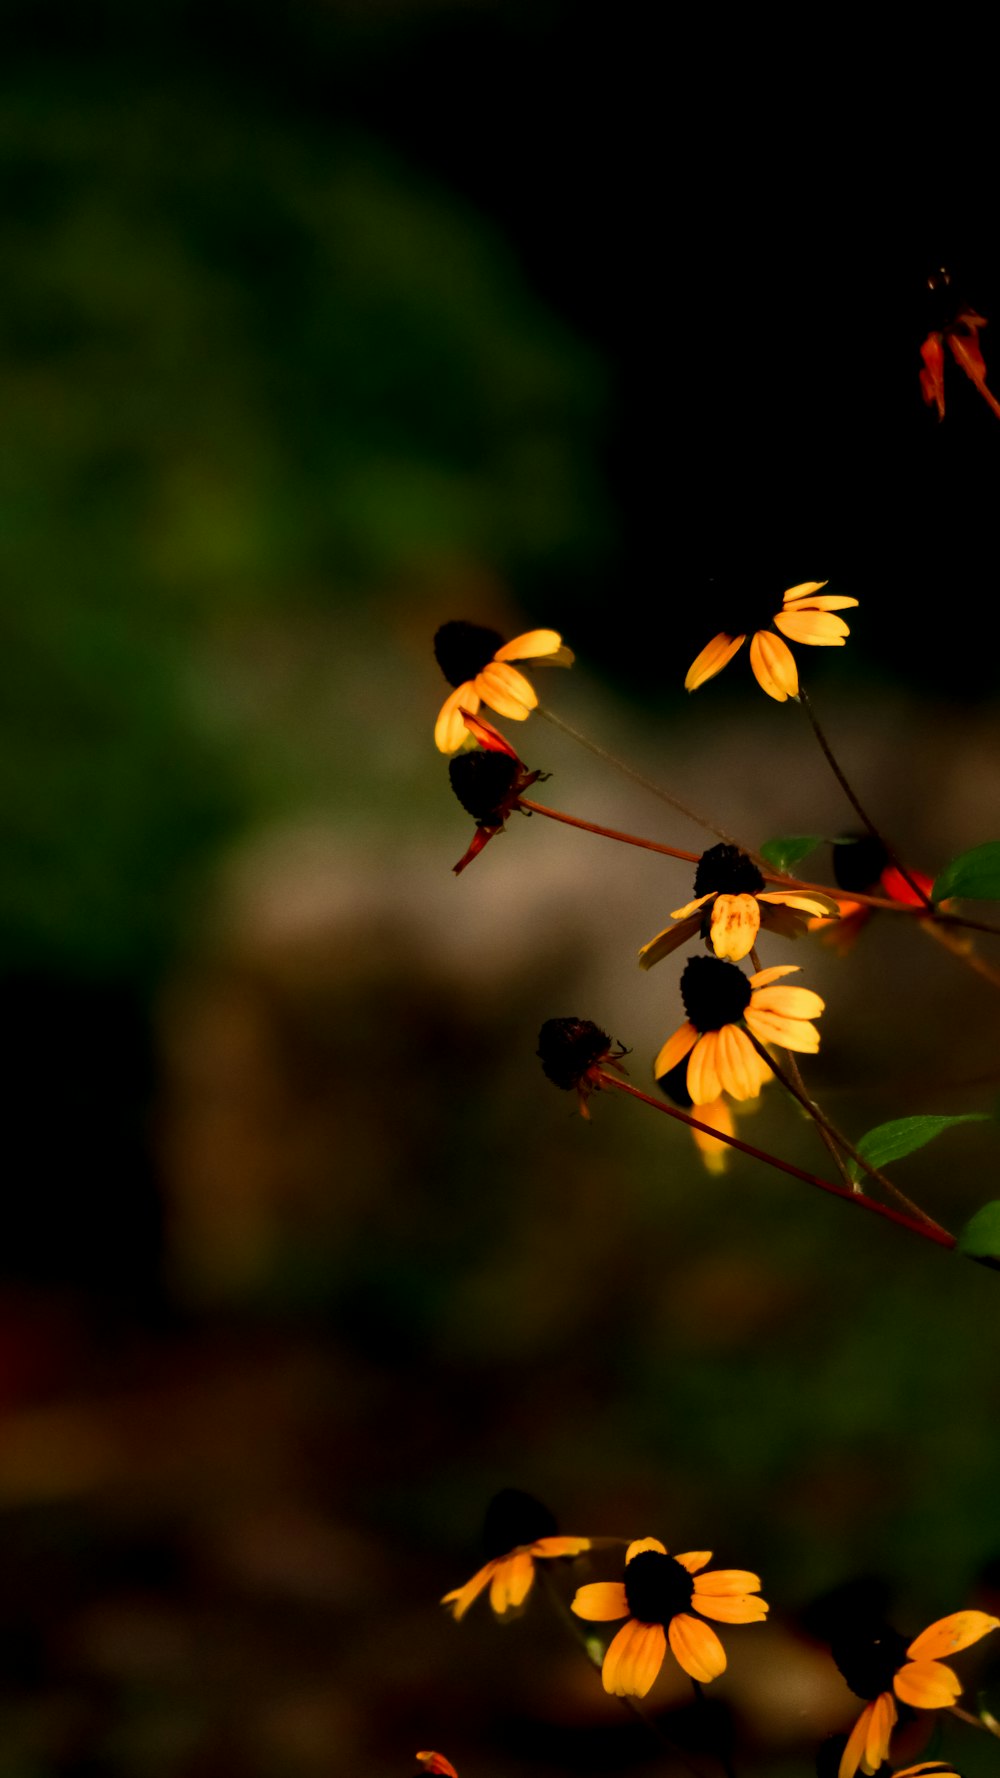 틸트 시프트 렌즈의 노란색과 빨간색 꽃